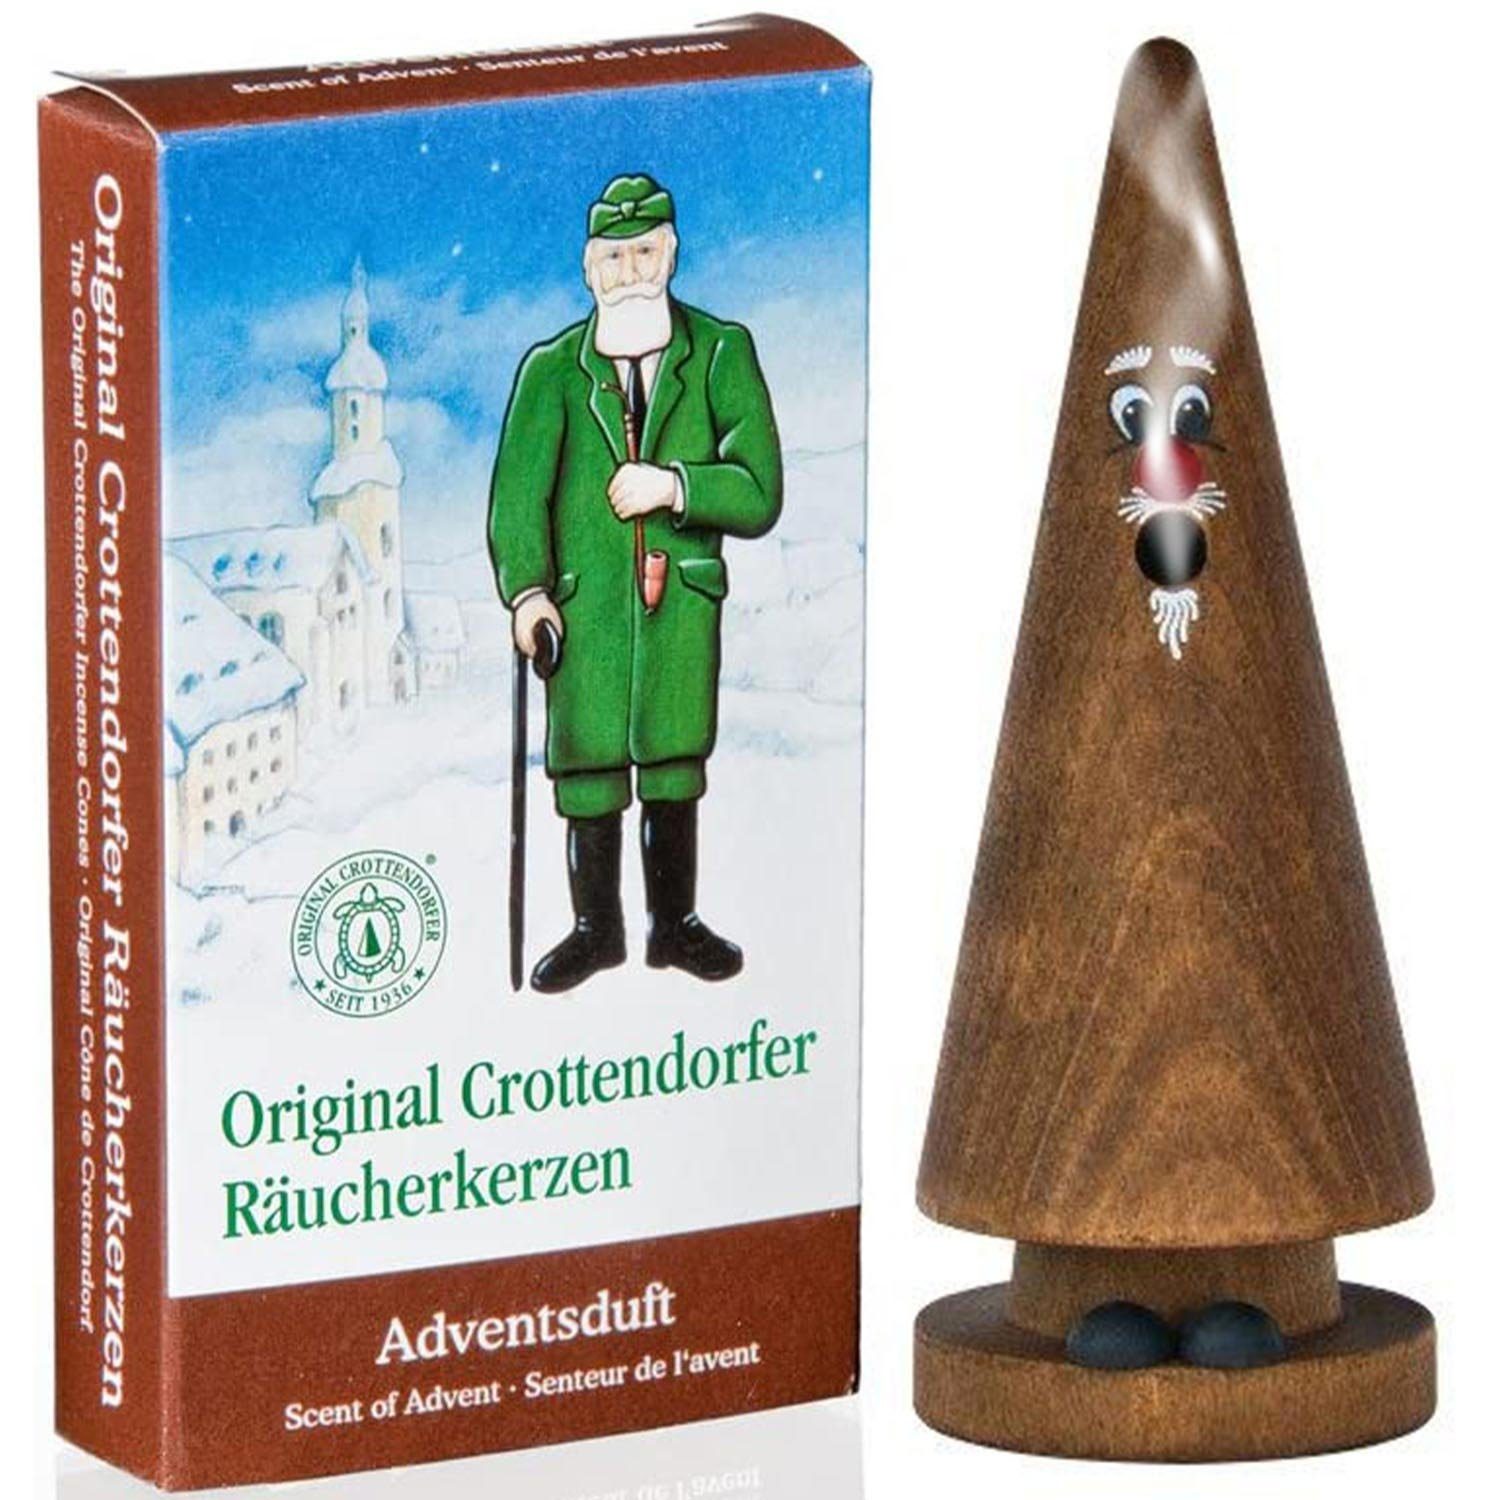 Crottendorfer Räuchermännchen Räucherkerzen Set Ziegenbein Addi Advent + Adventsduft 24 Kegel, (2 St), Original Erzgebirge Holzkunst, 13cm hoch